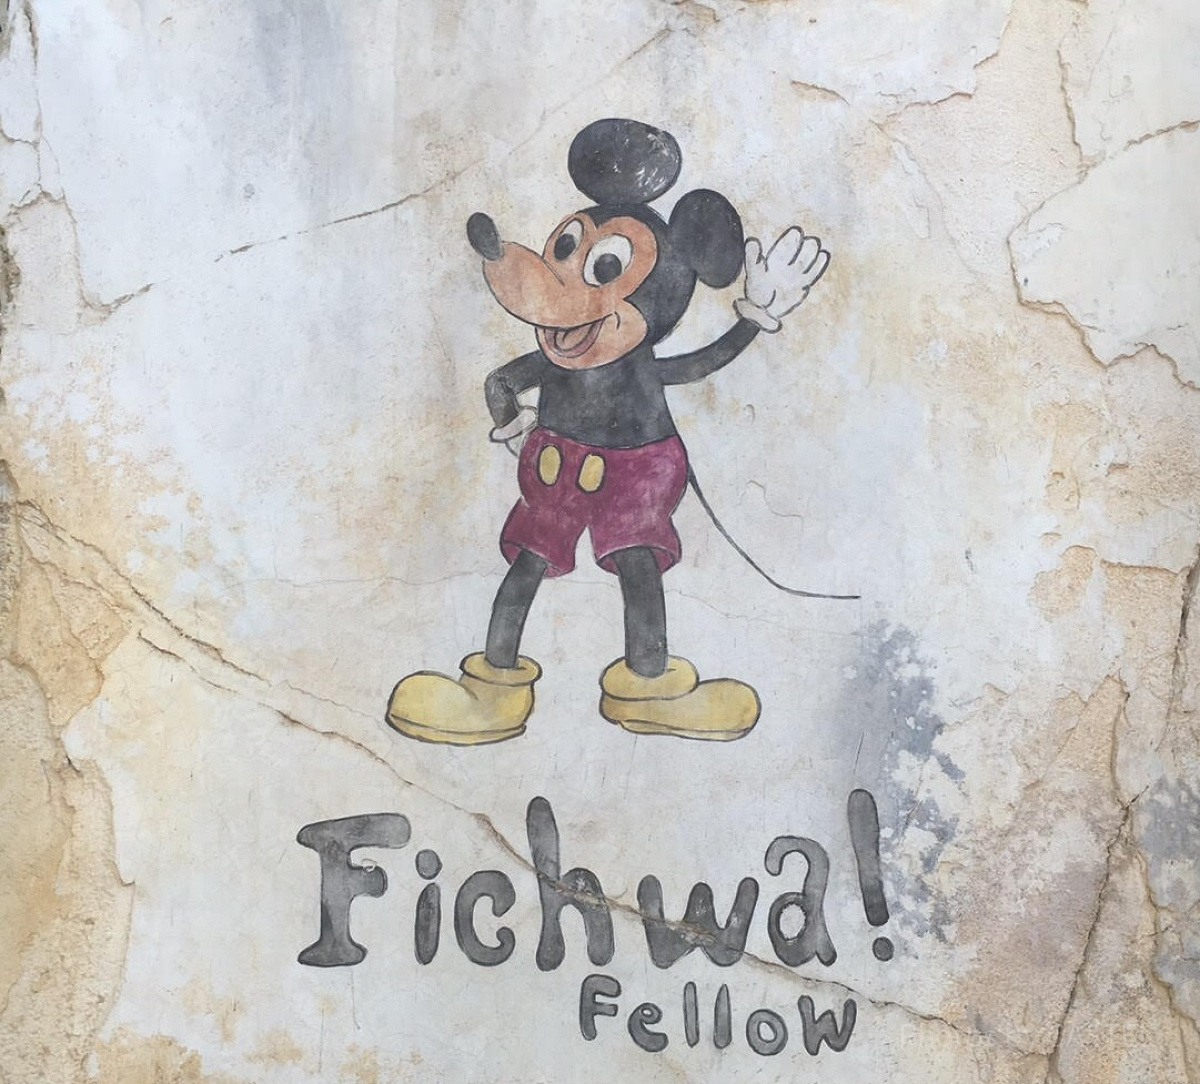 アフリカエリアのハランベマーケットにある壁。「Fichwa Fellow」はスワヒリ語で「隠れている仲間」